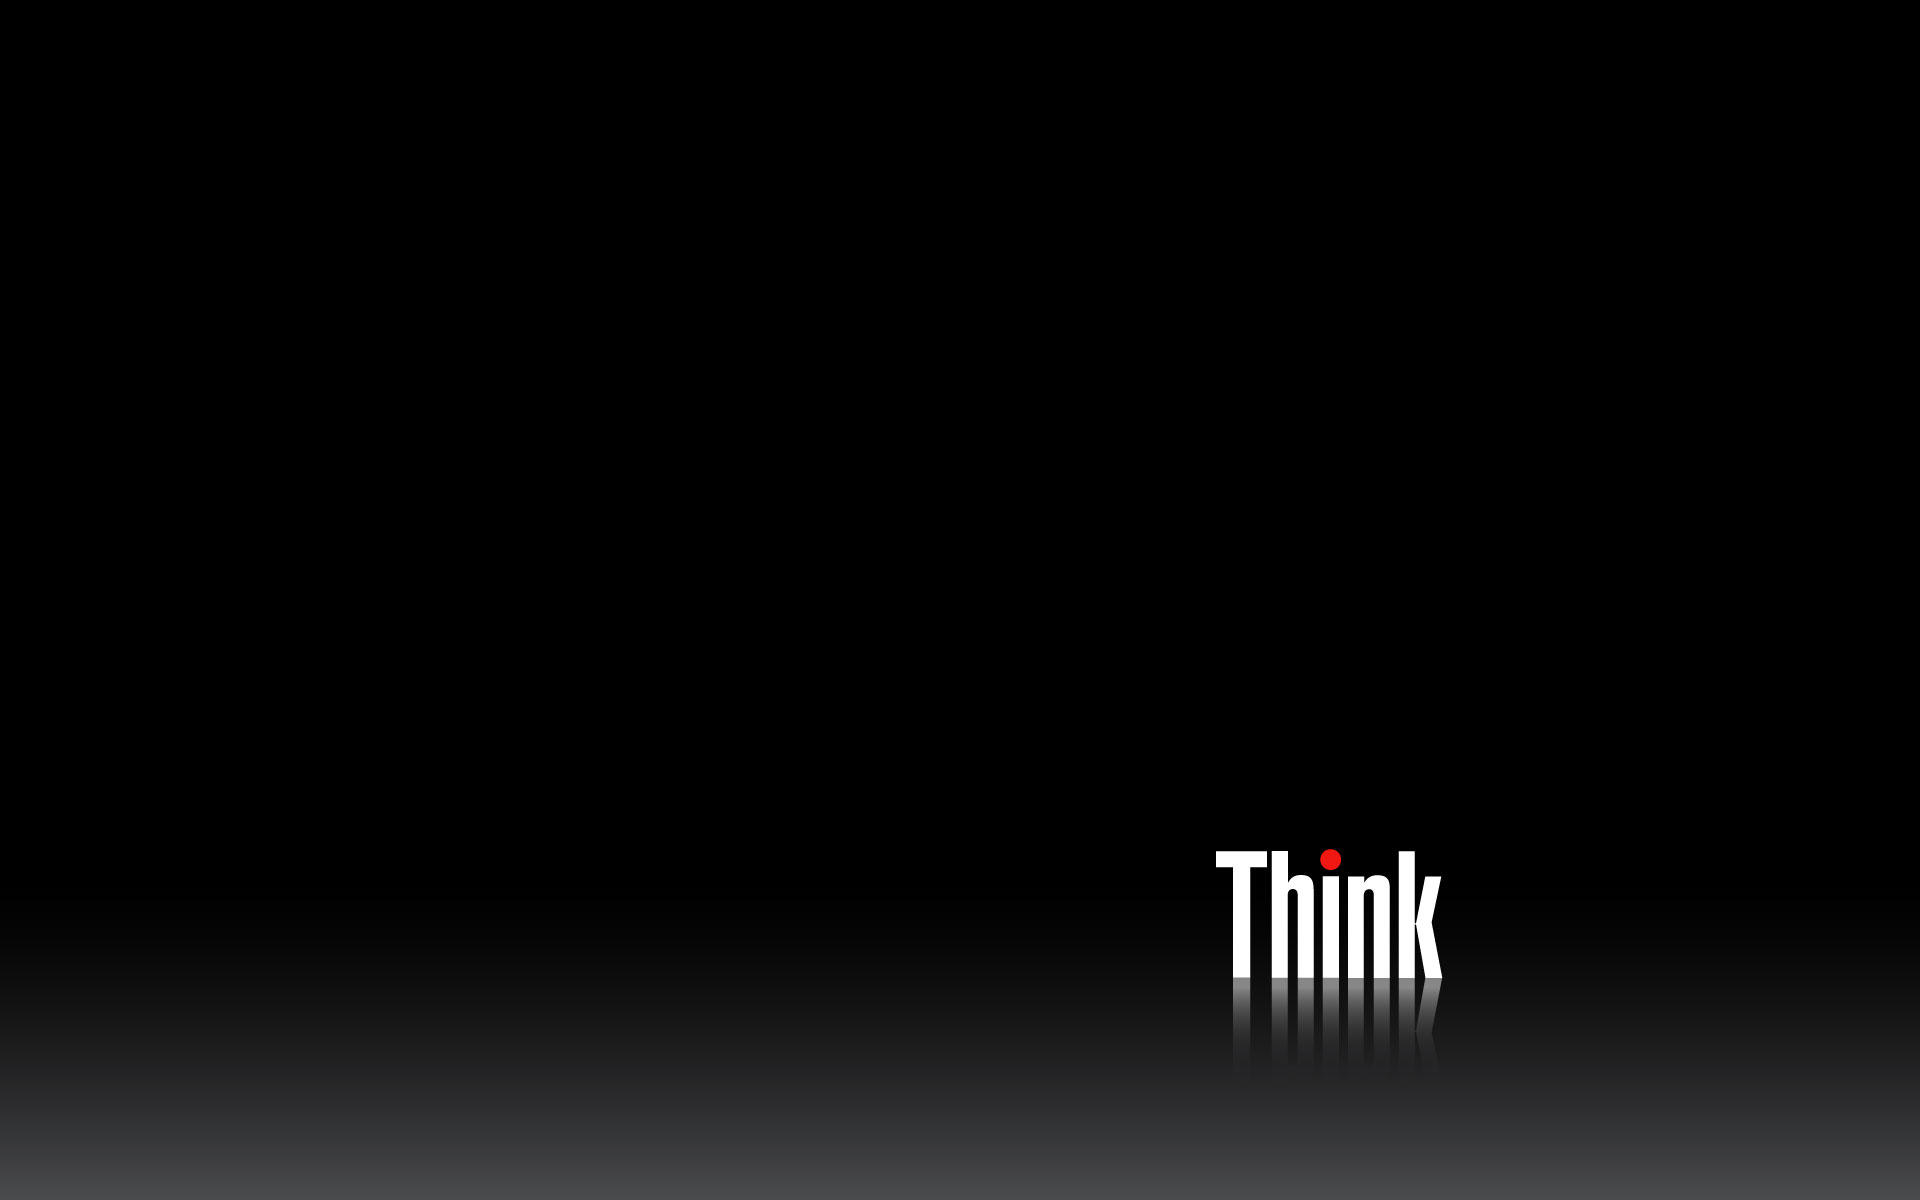 Thinkpad Wallpaper Wide HD